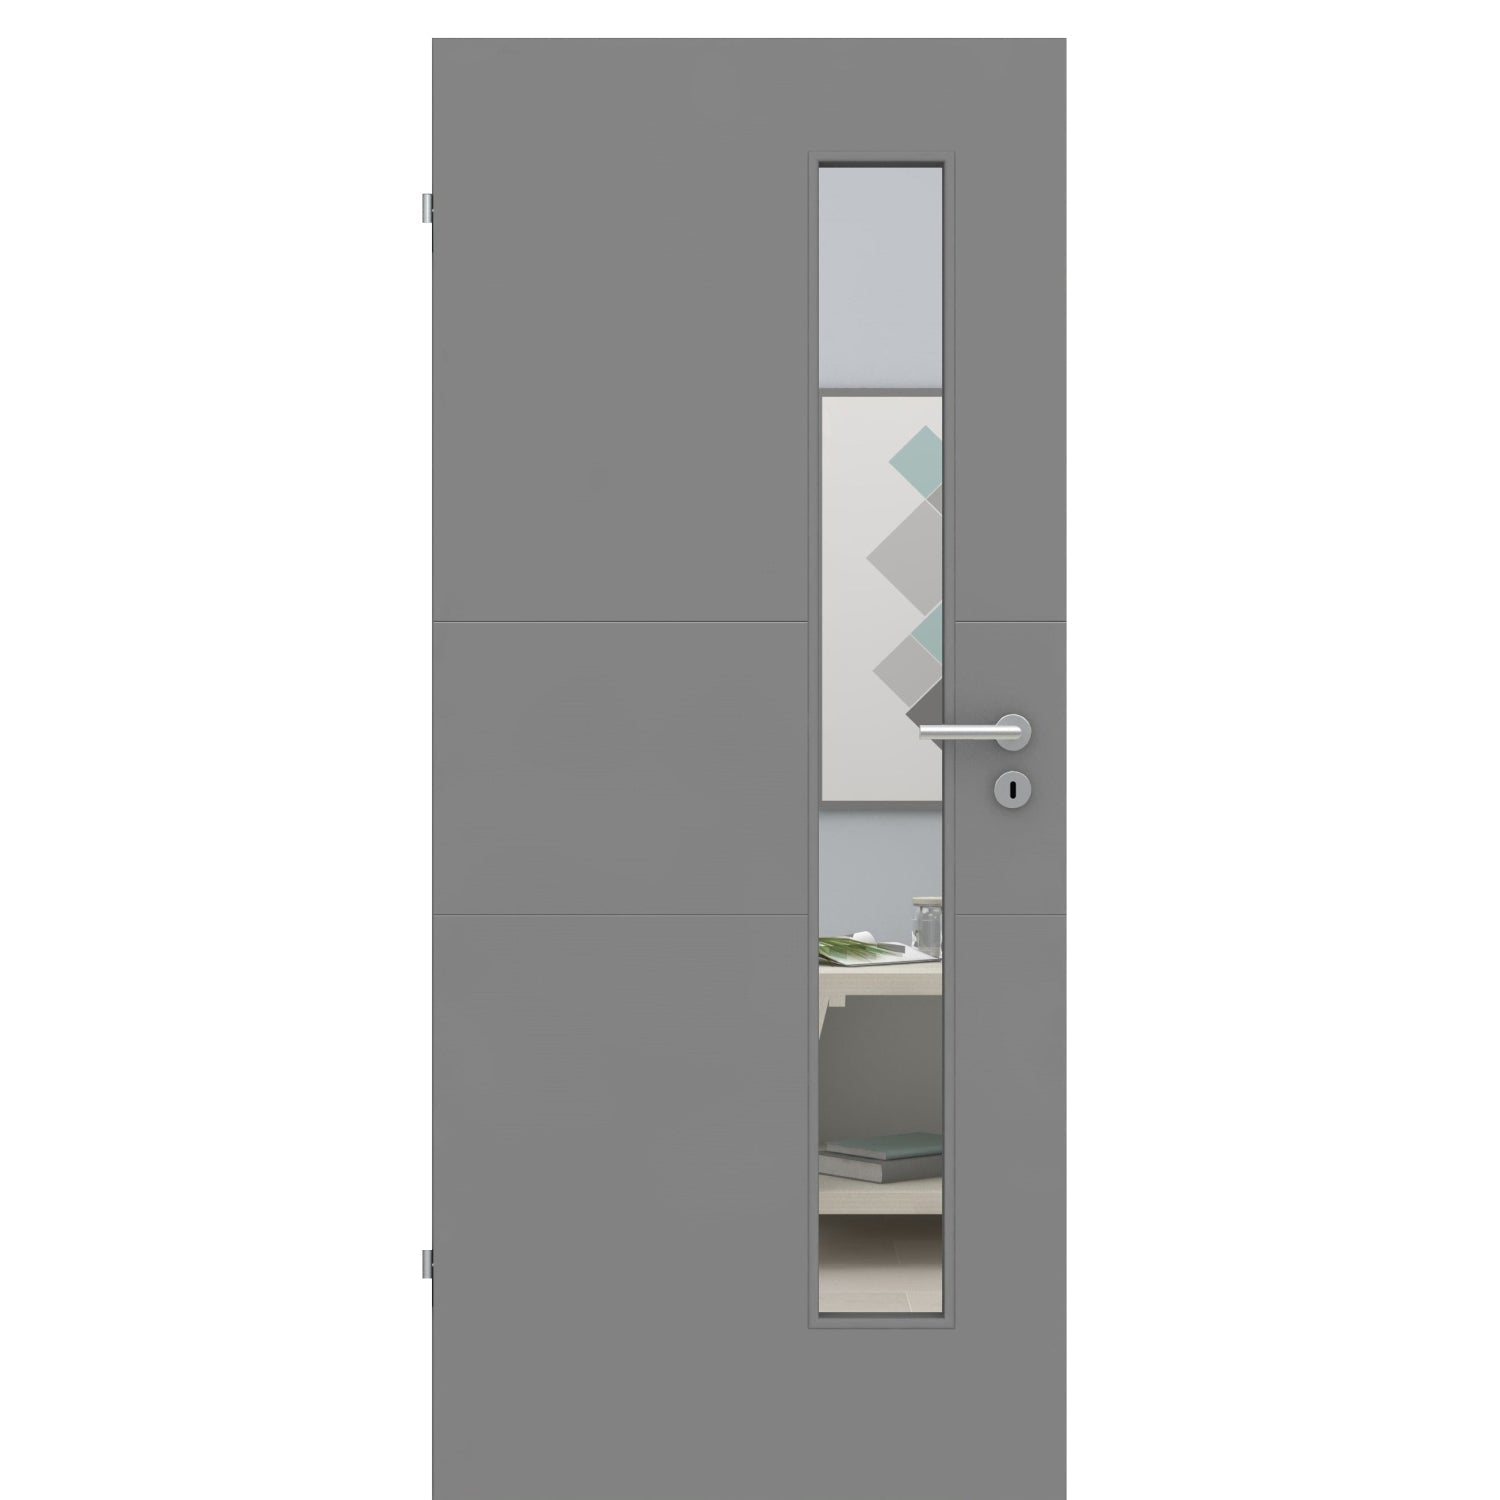 Zimmertür mit Lichtausschnitt grau 2 Rillen quer Designkante - Modell Designtür Q27LAS